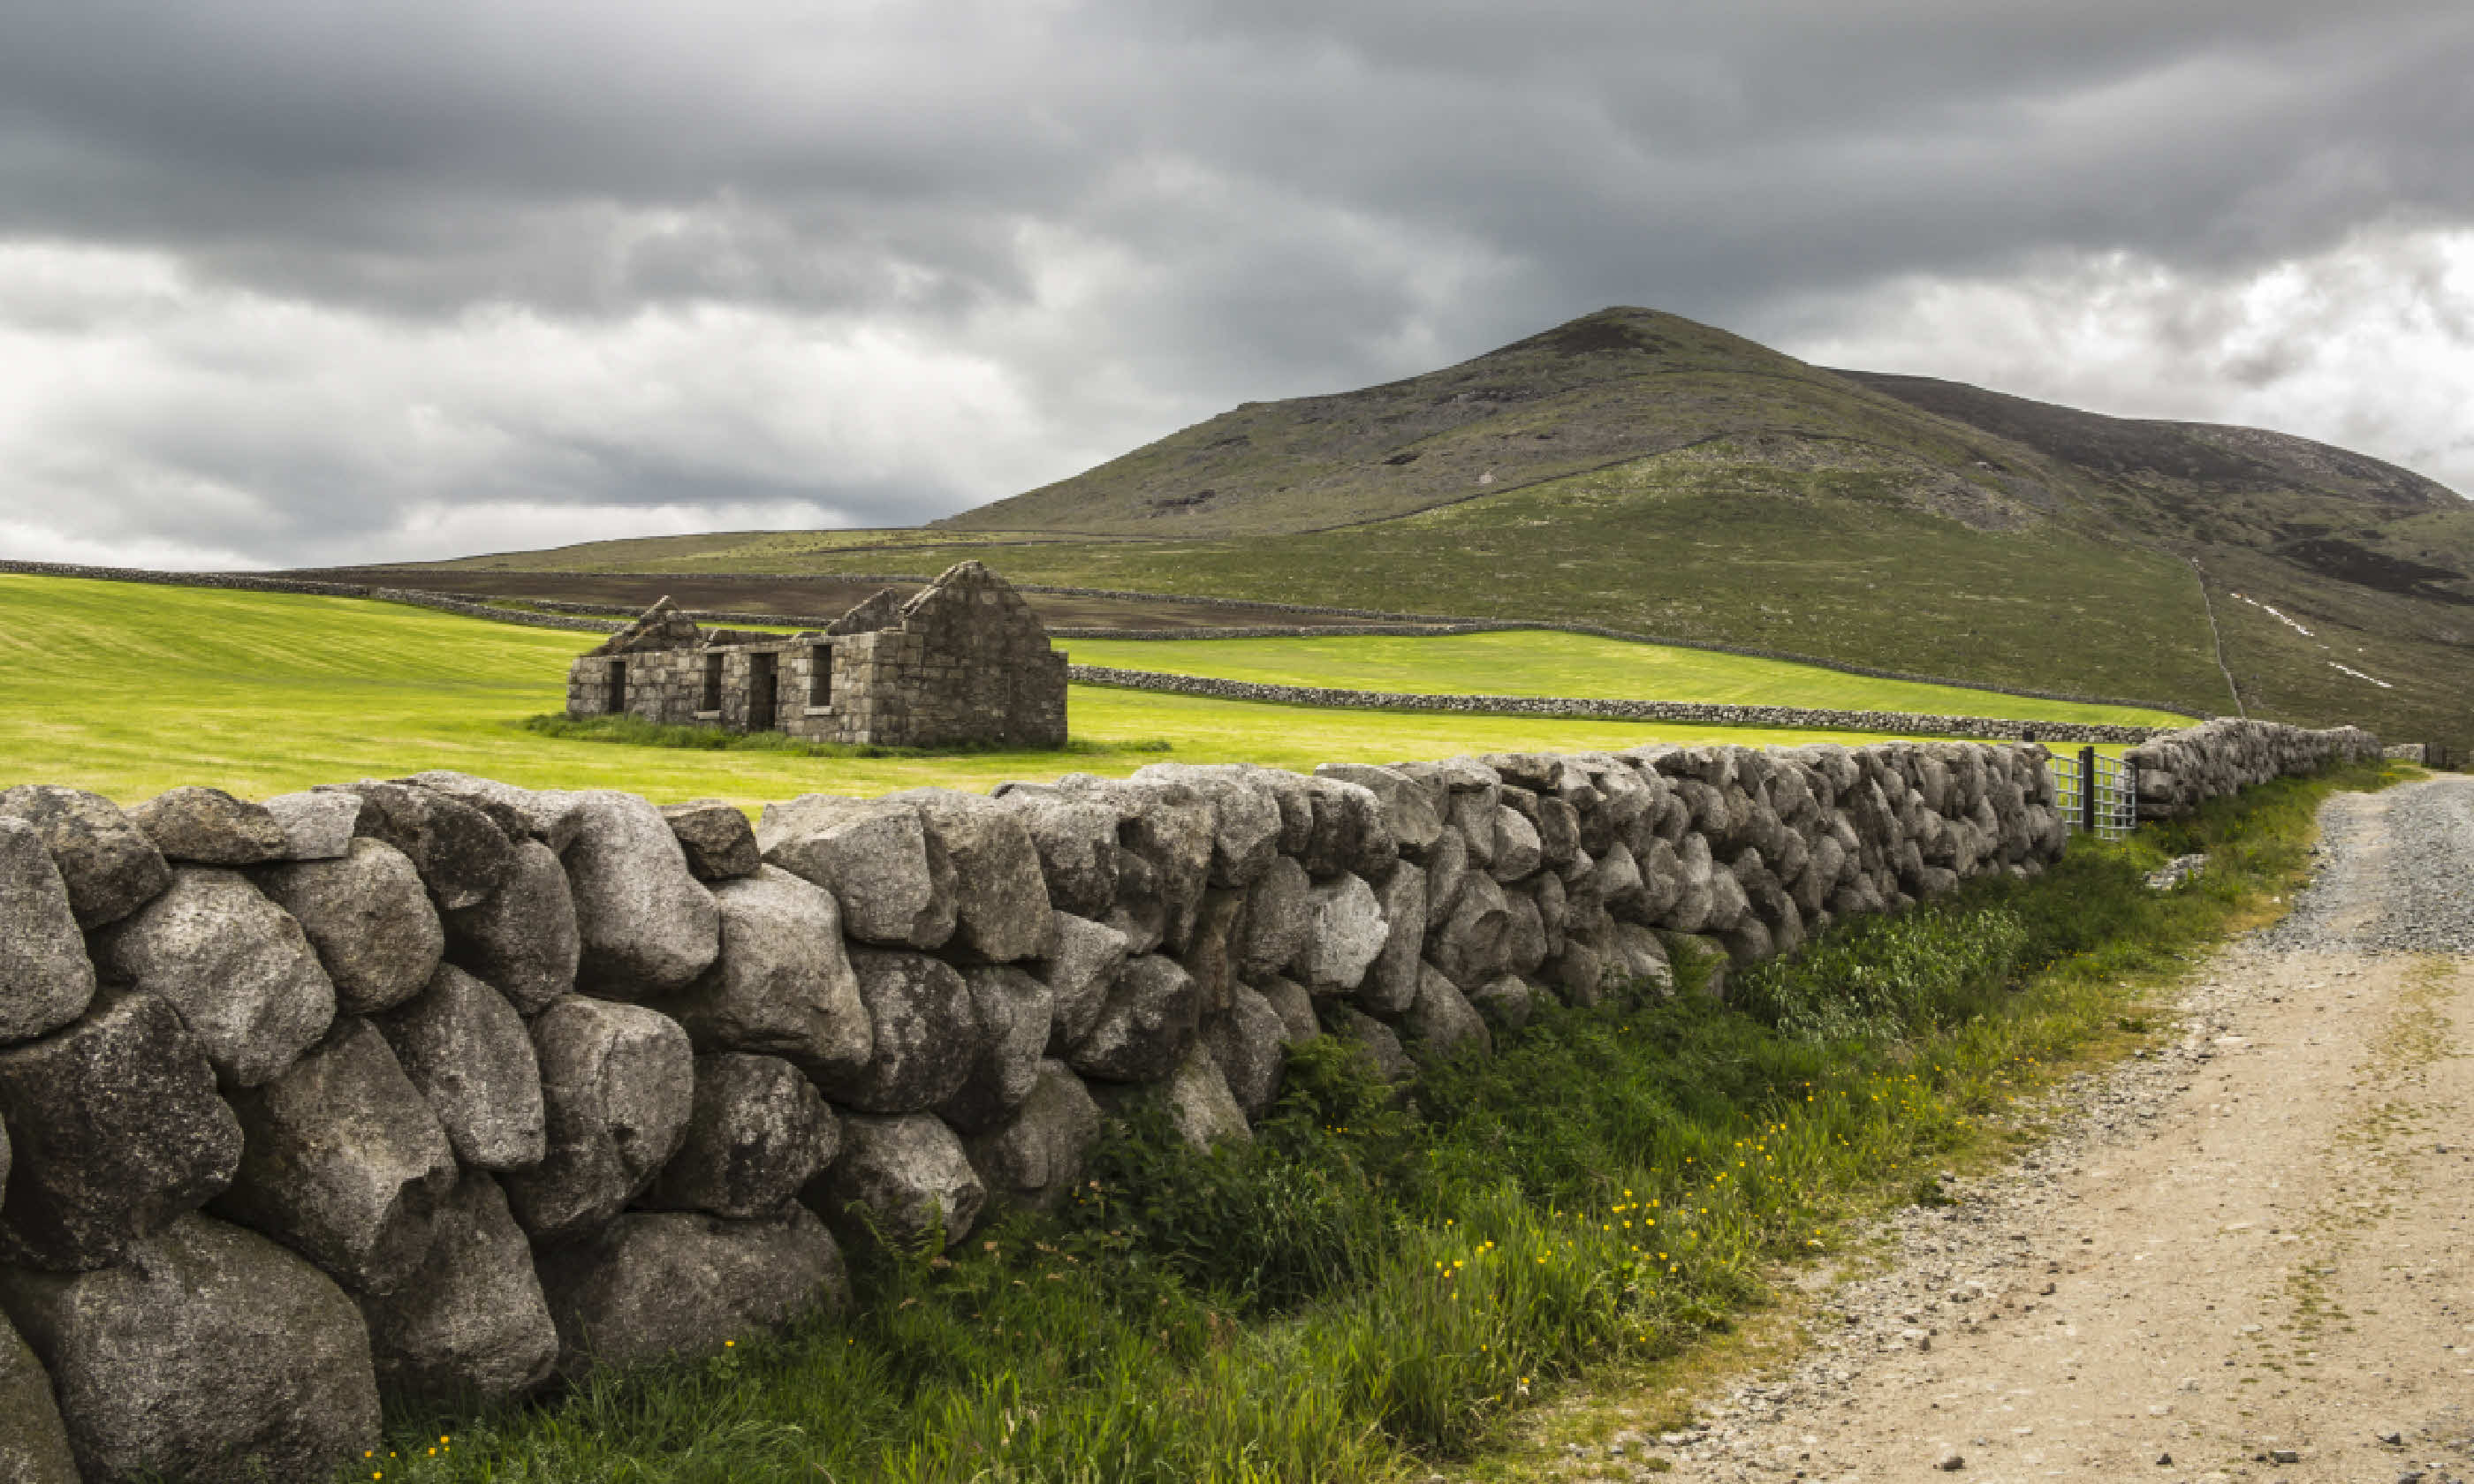 Derelict cottage in the Mournes, Ireland (Shutterstock)